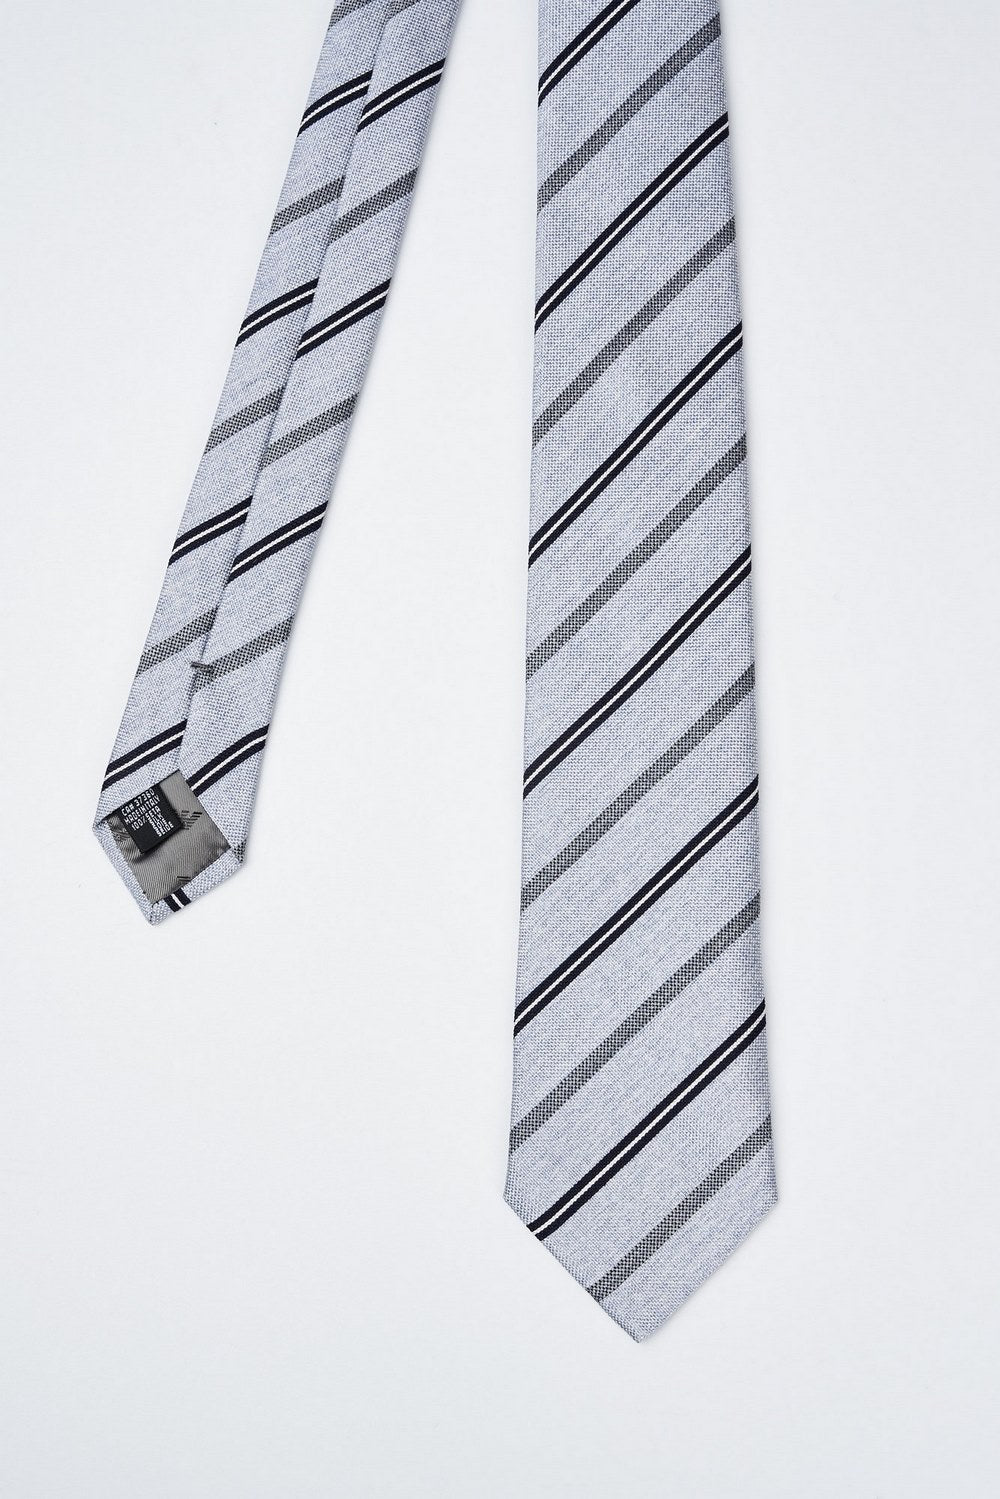 Cravatta in pura seta jacquard a righe - 2